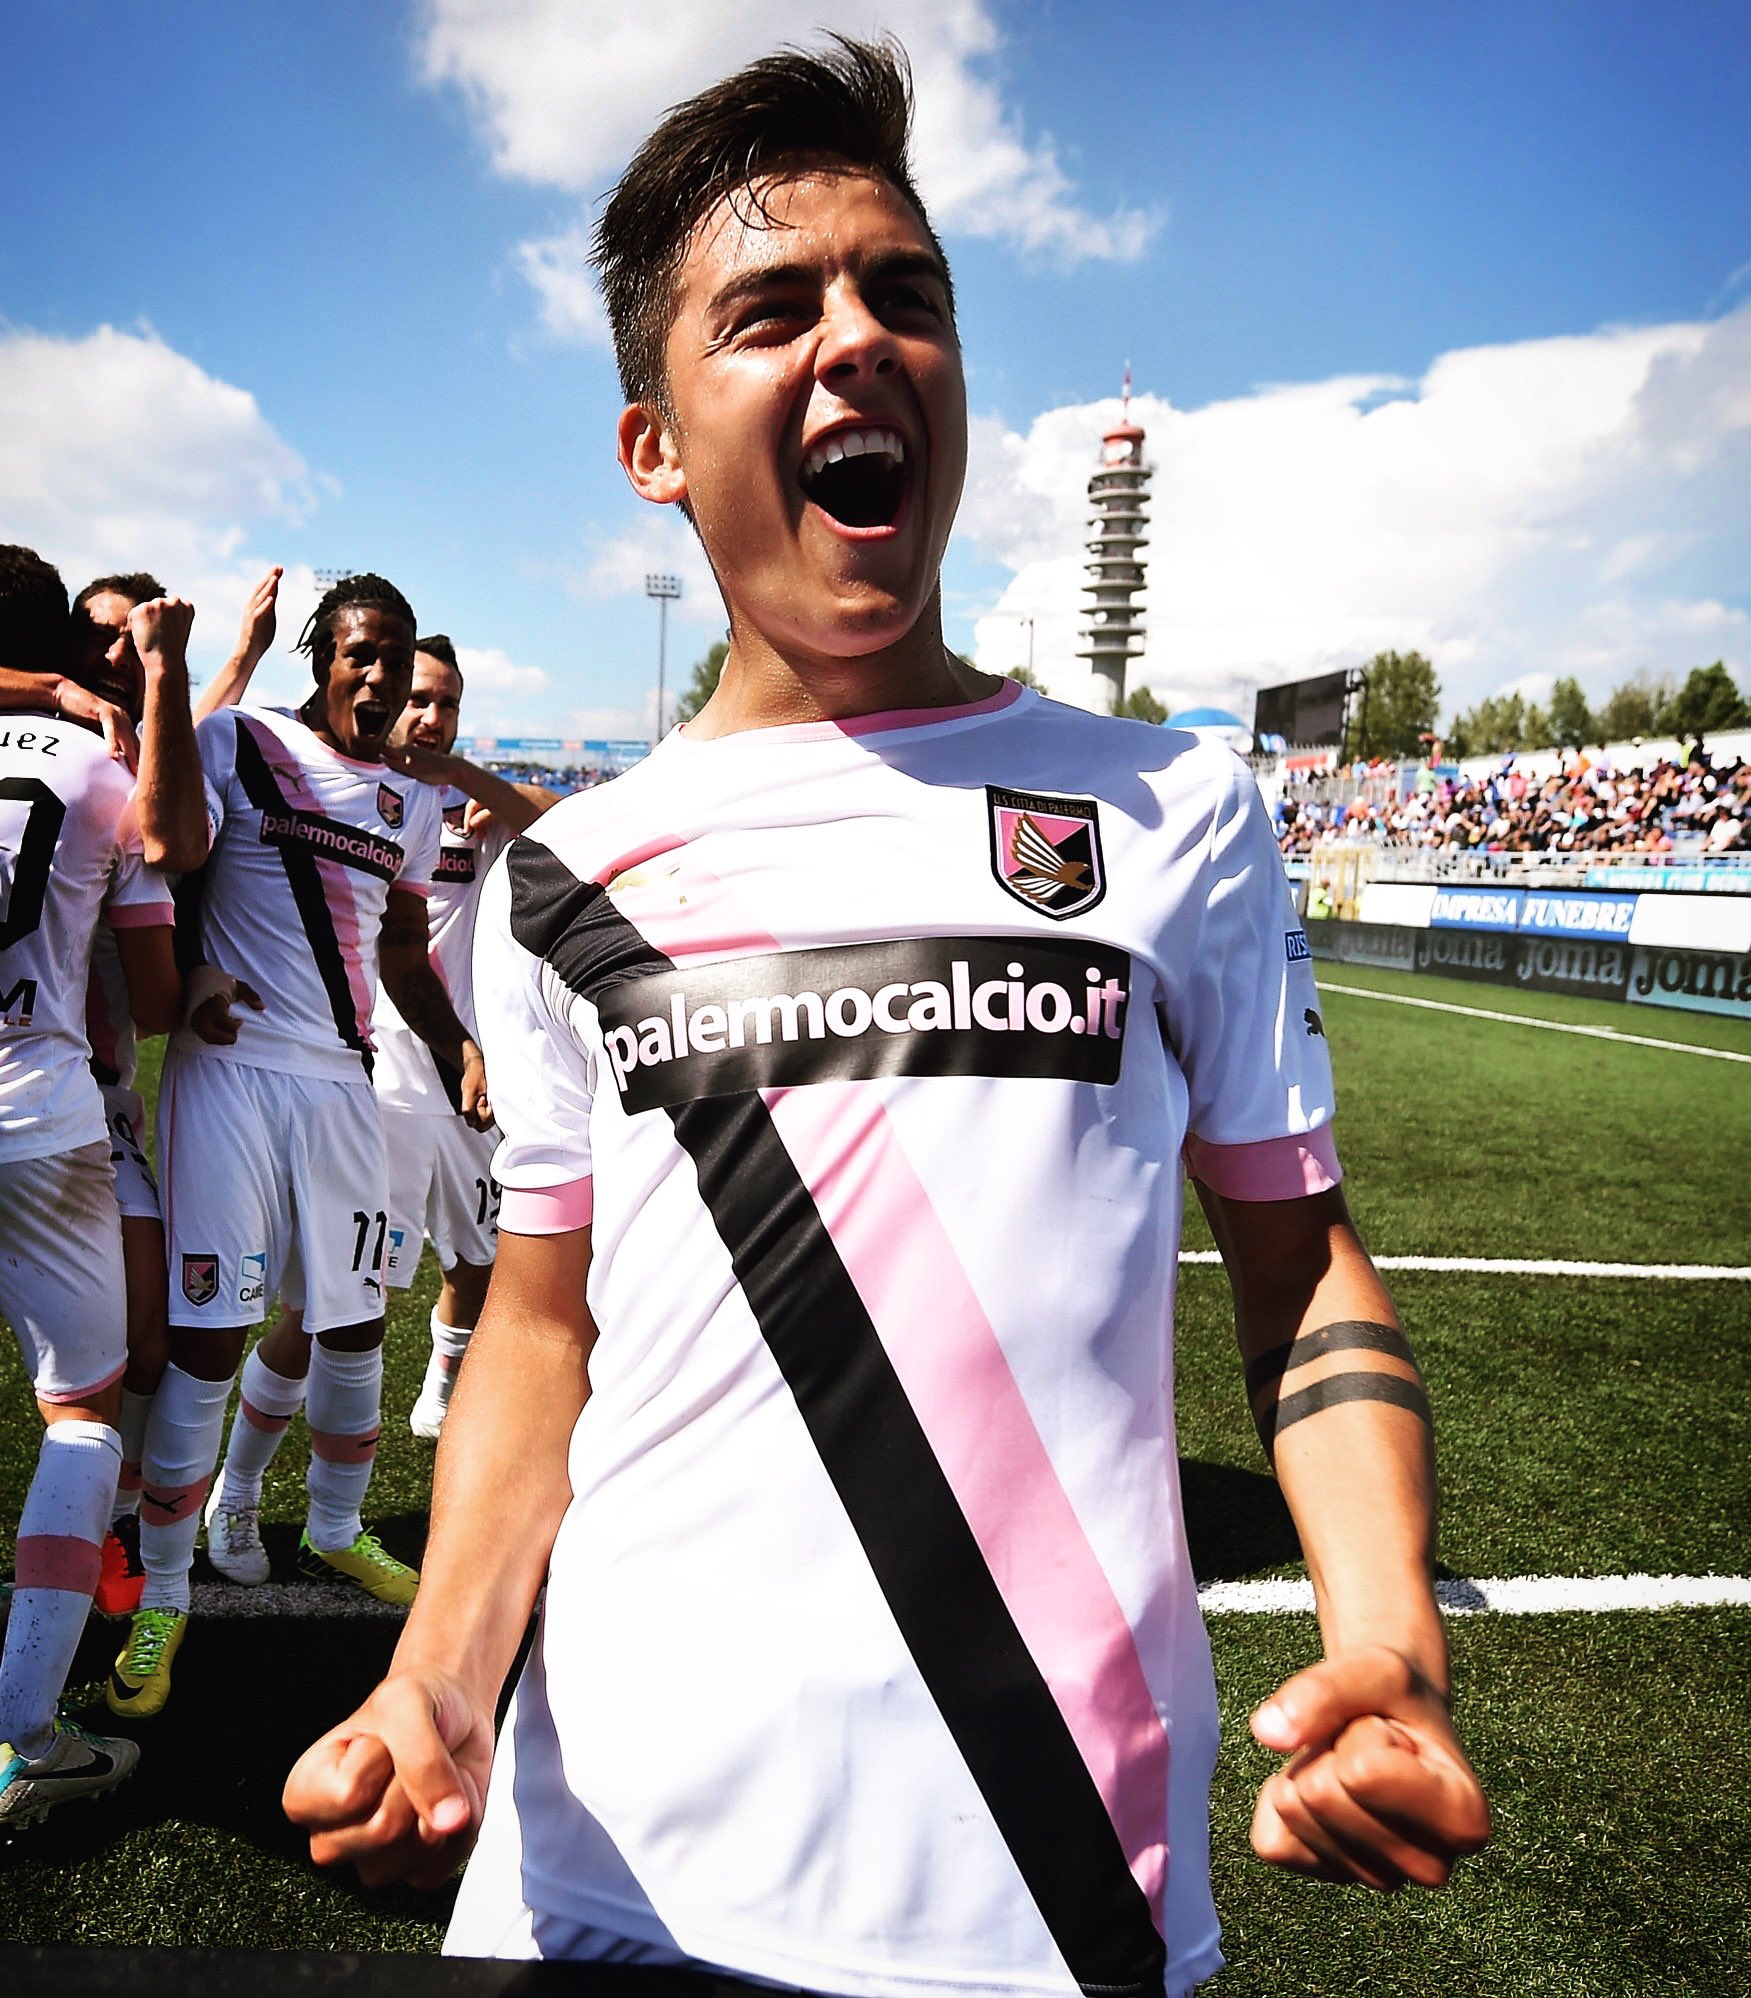 Palermo F.C. on X: Un picciriddu campione del mondo